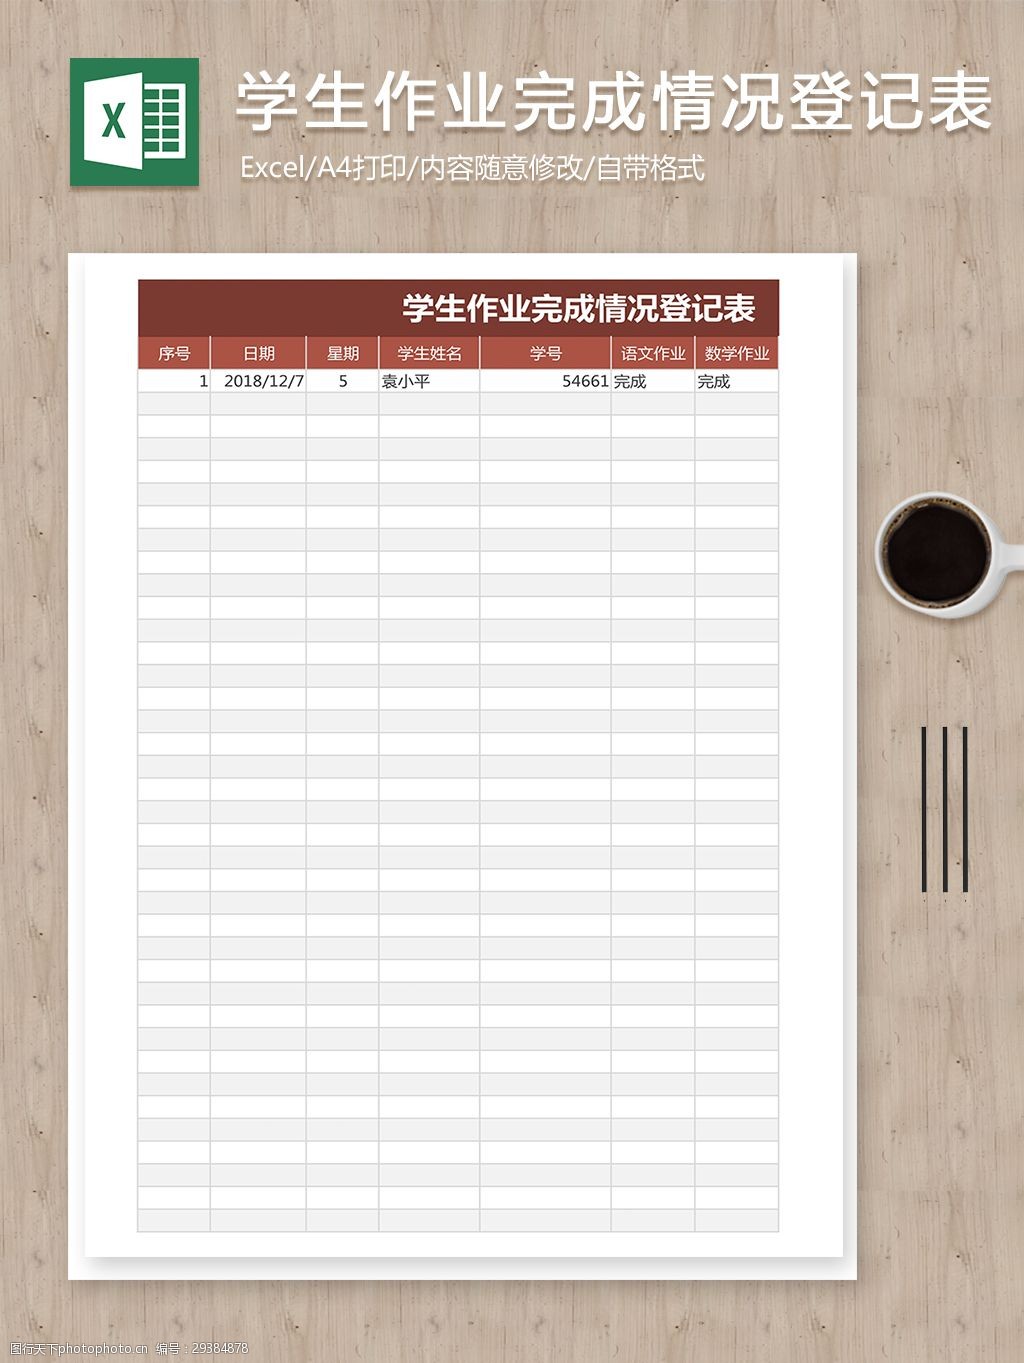 报表 报表模板 表格 表格模板 表格设计 学生作业登记表 作业登记表